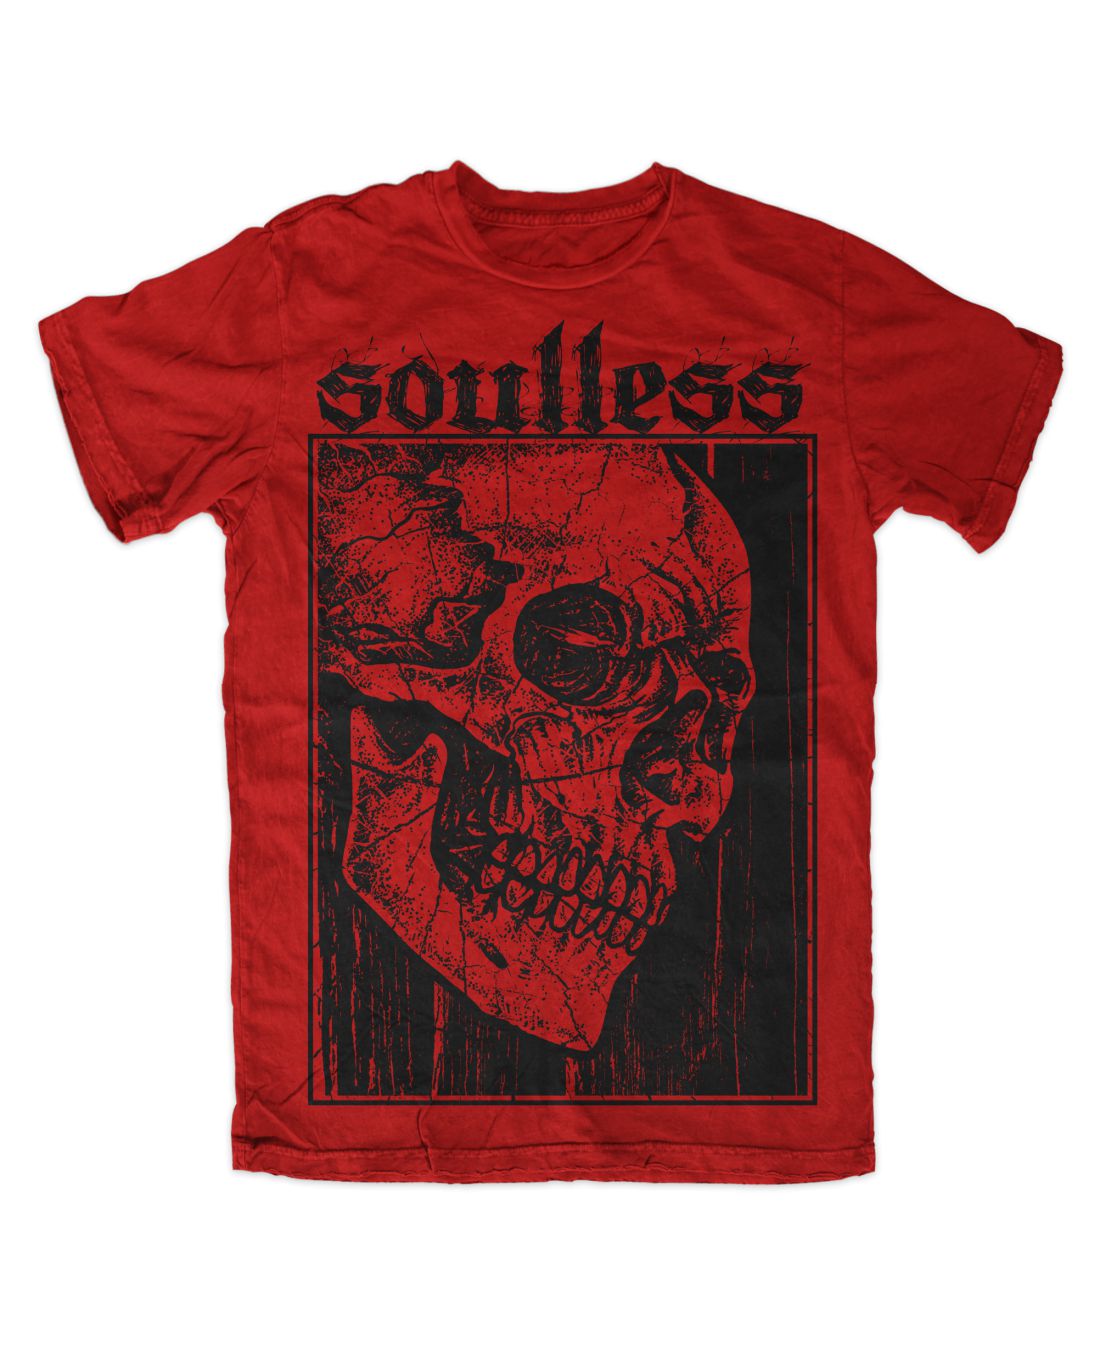 Soulless (piros póló)